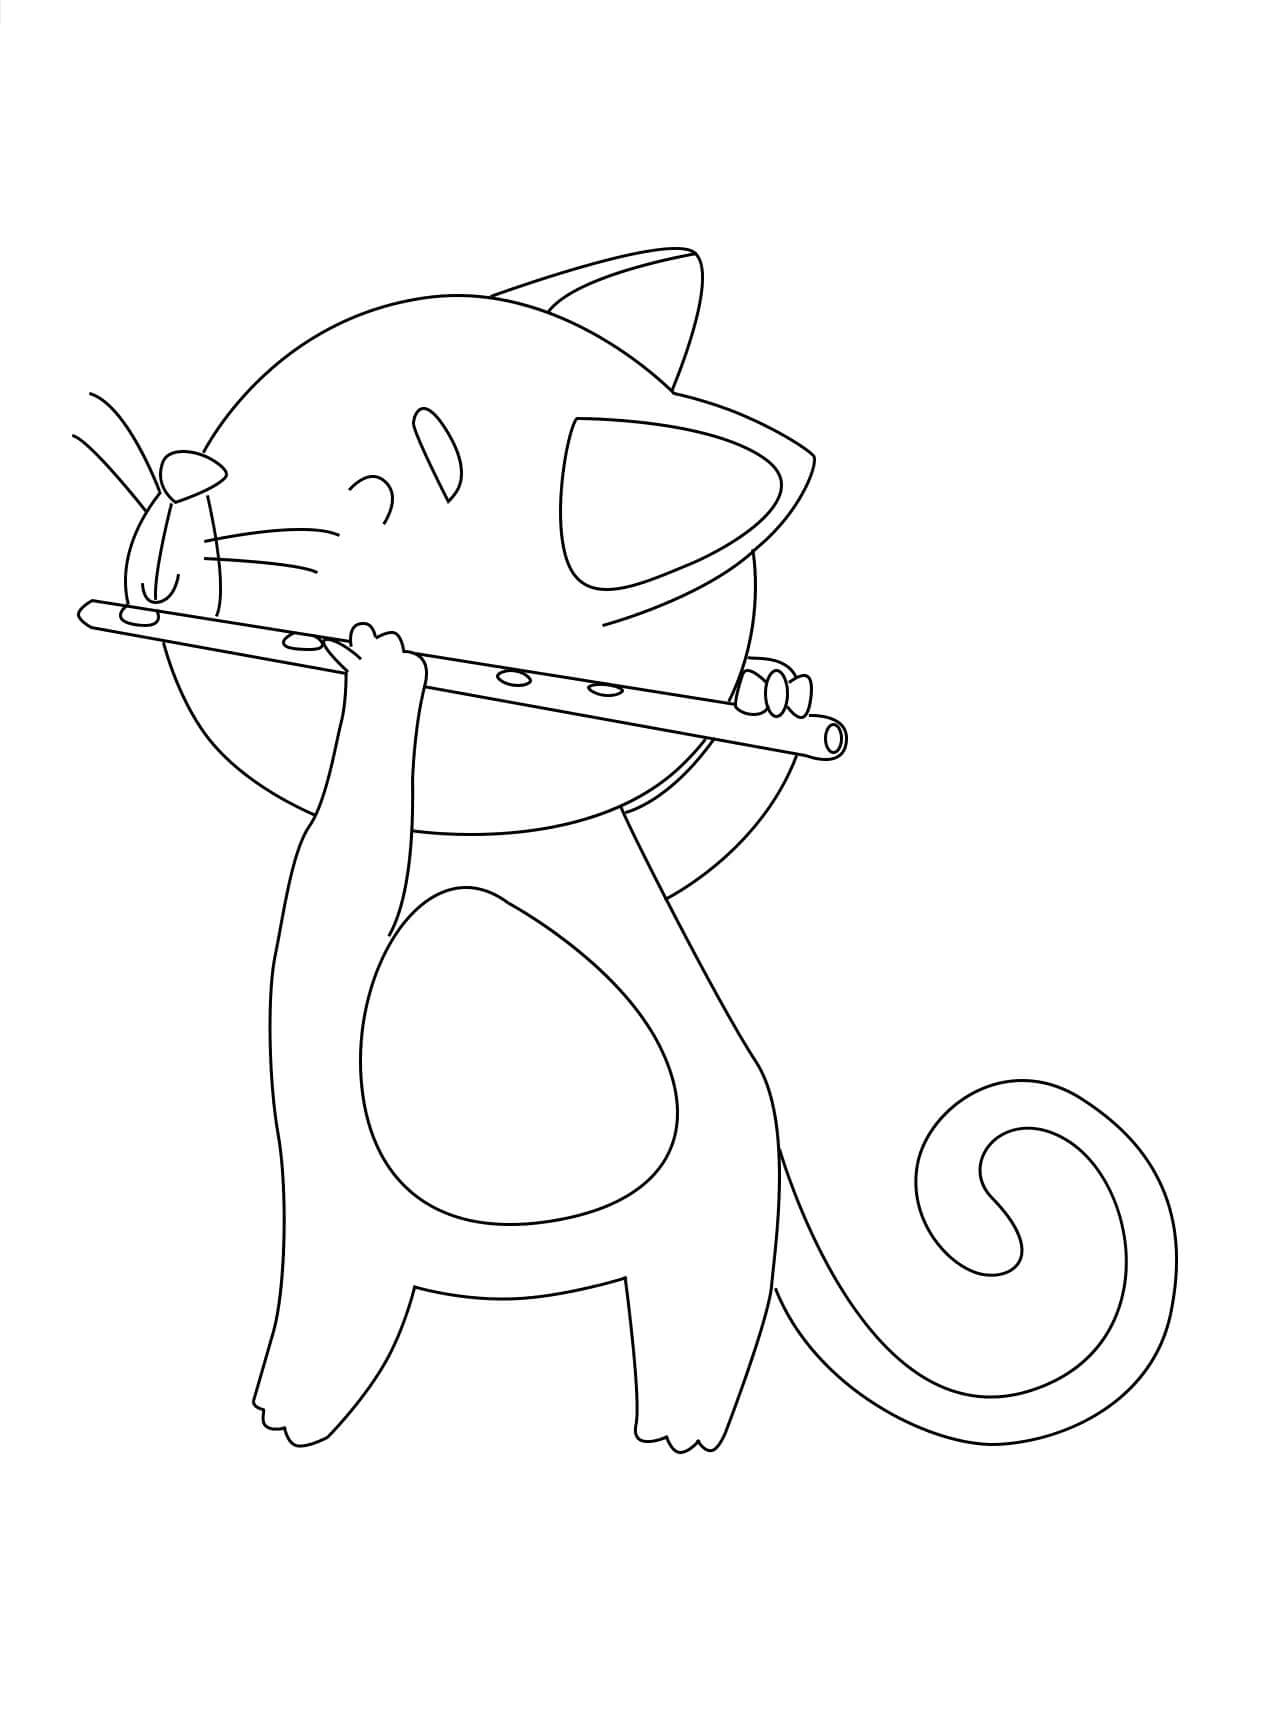 플루트를 연주하는 고양이